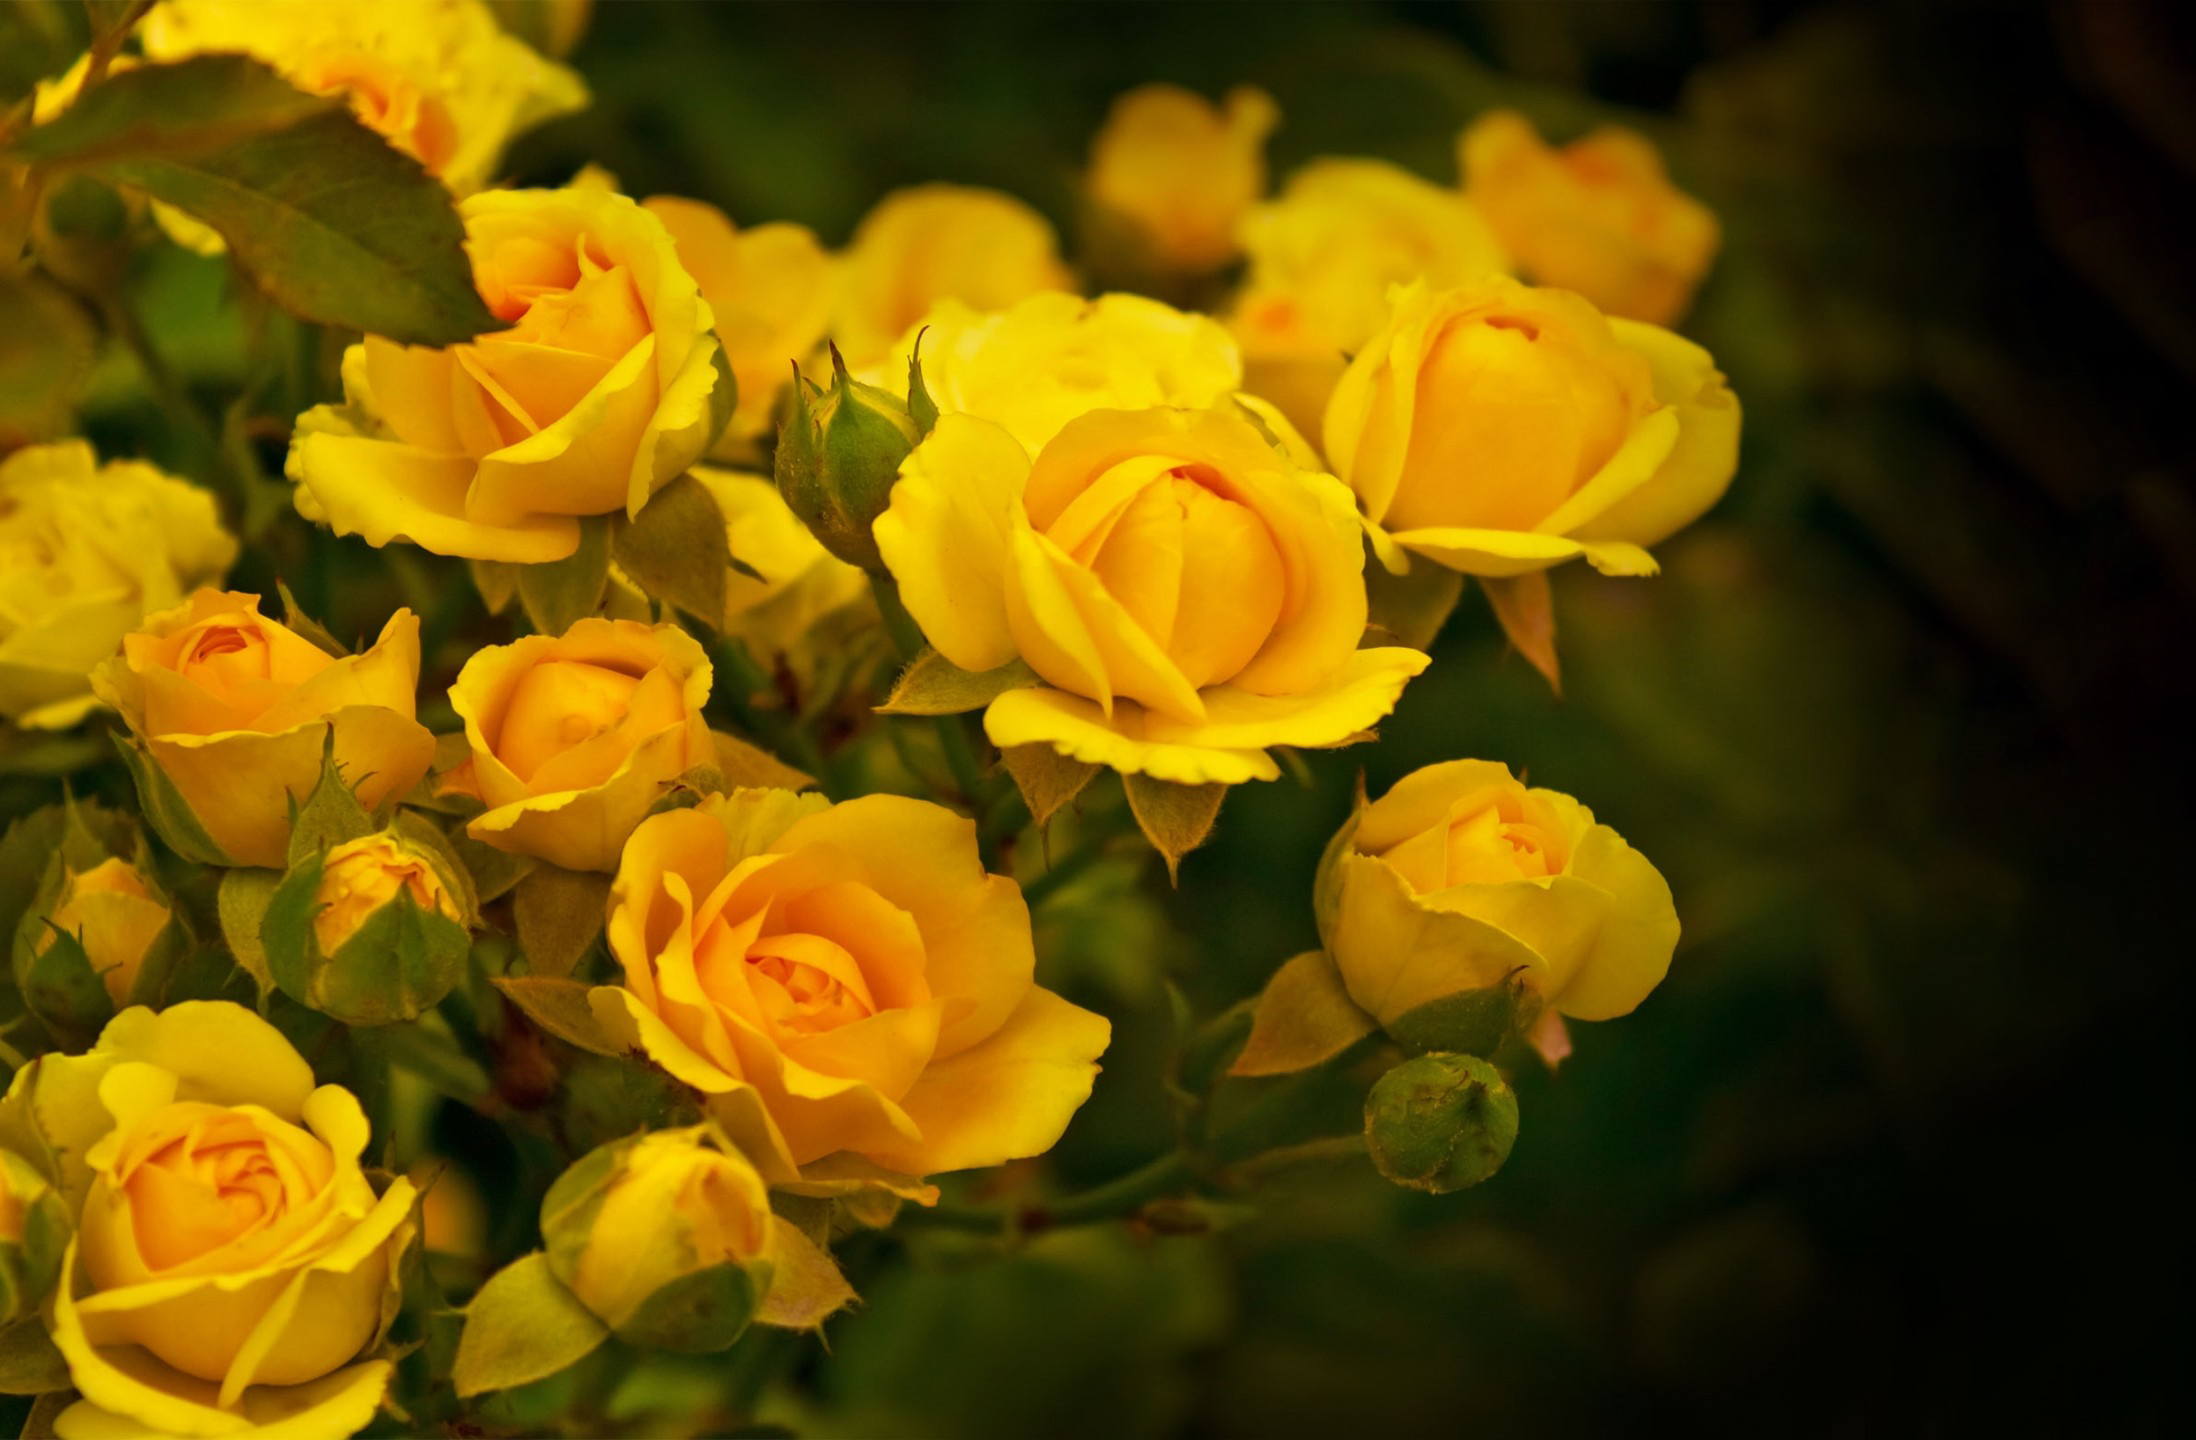 50 Hình nền hoa hồng đẹp nhất thế giới cho điện thoại, PC